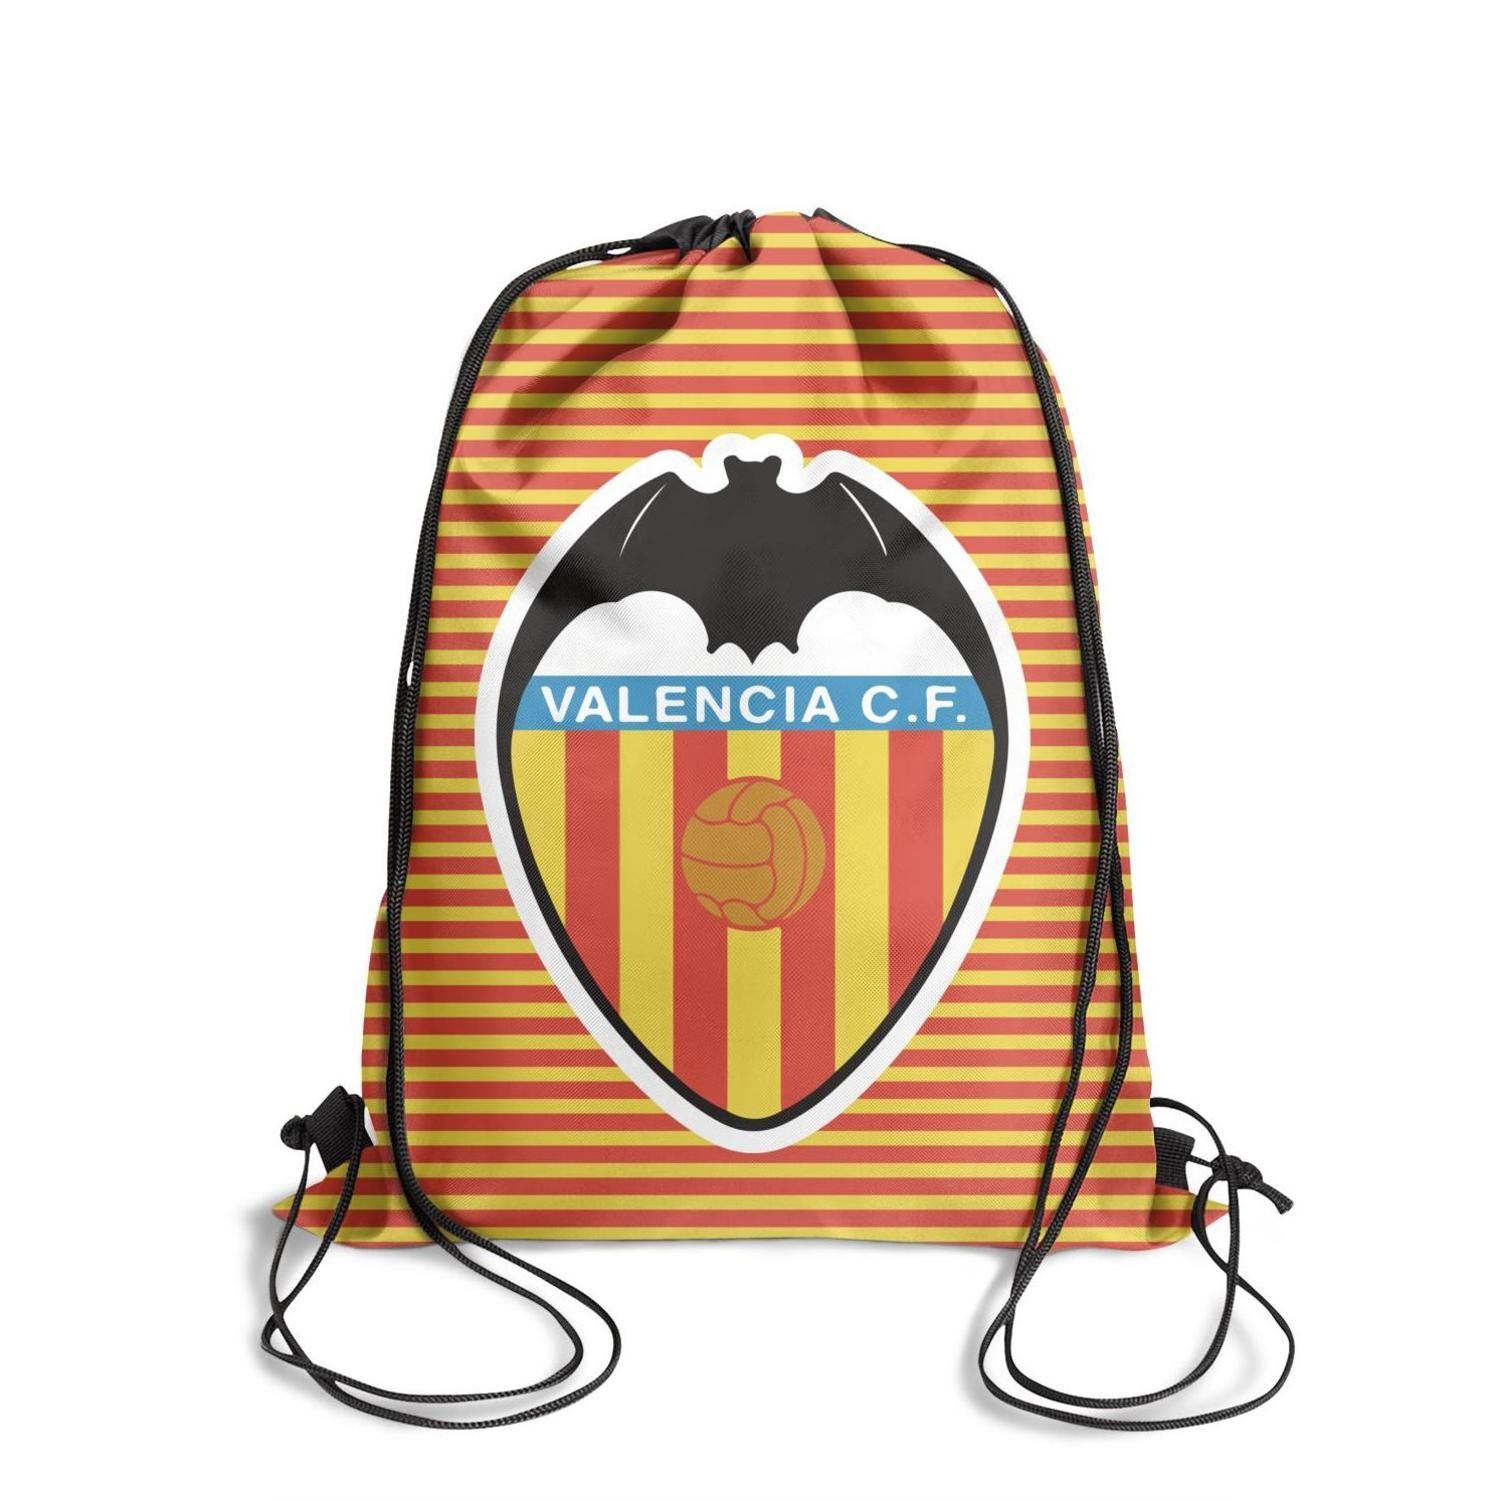 Dalset Agente Los Alpes Mochila deportiva Valencia CF Los Ches VCF plaid fashion popular paquete  personalizado mochila de edición limitada